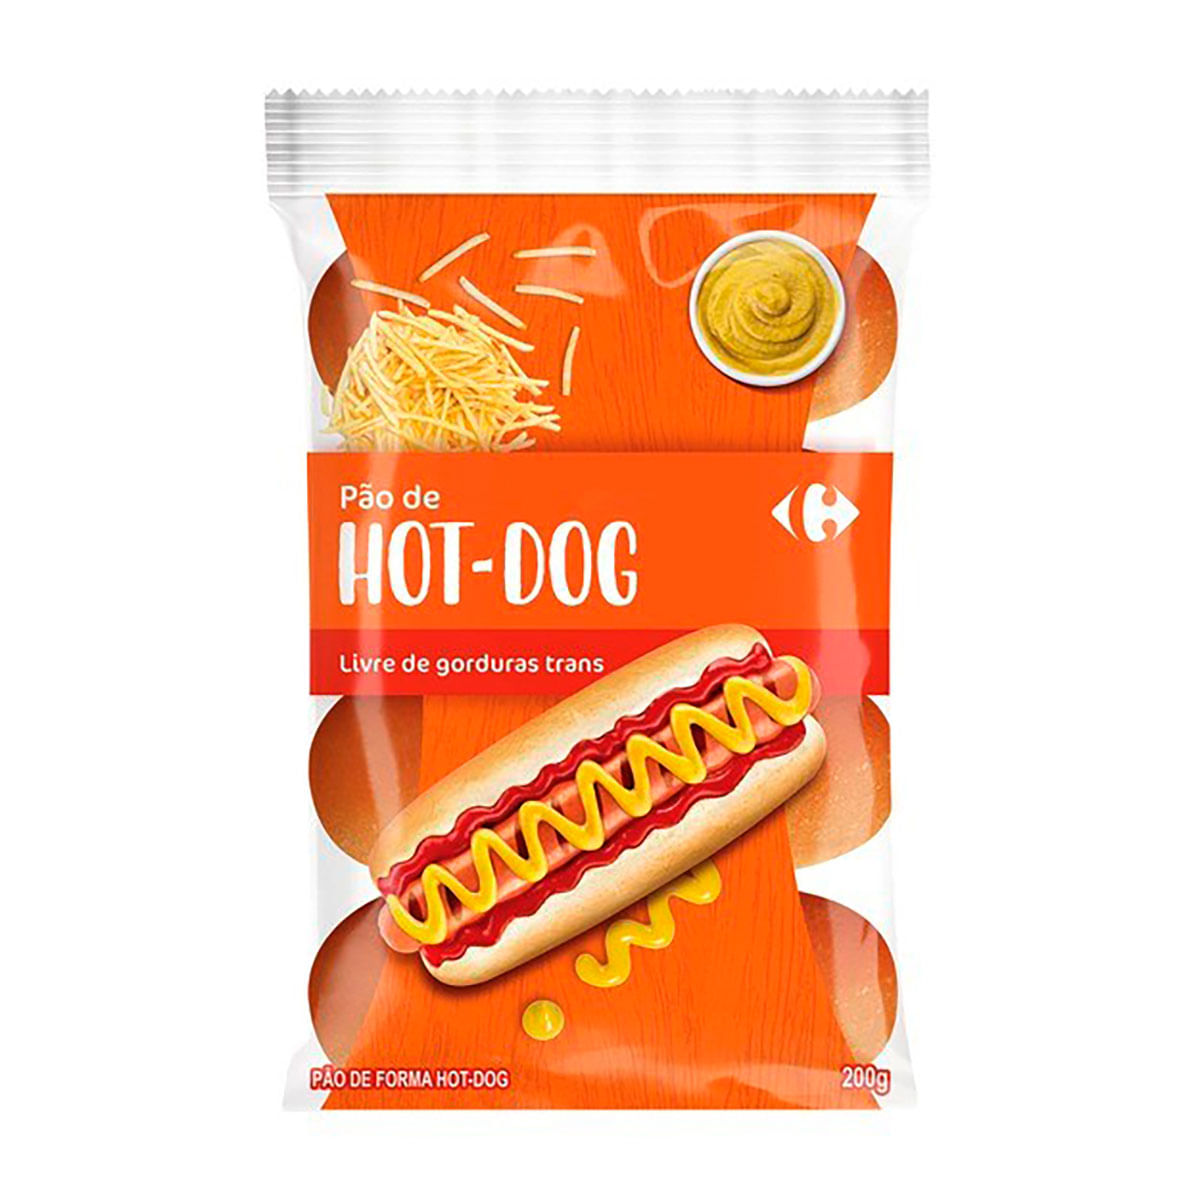 Pão para Hot Dog